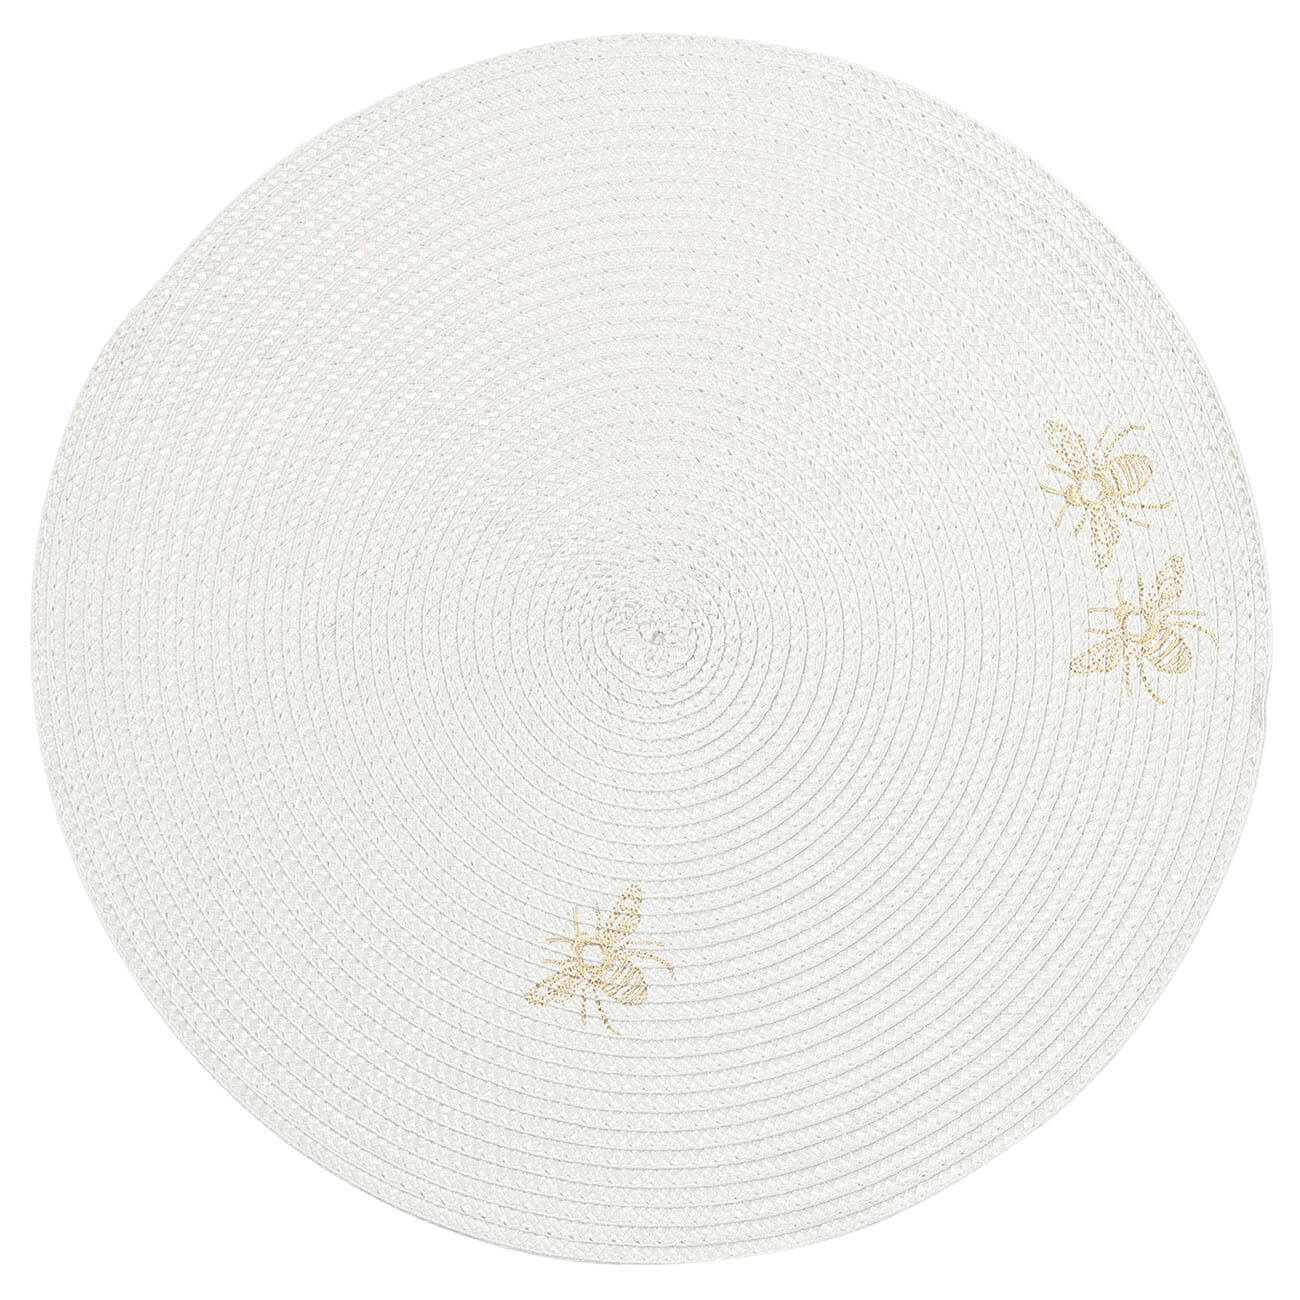 Салфетка под приборы, 38 см, полипропилен/ПЭТ, круглая, светло-серая, Пчелы, Circle embroidery футляр для очков на магните 15 5 см х 3 см х 6 см салфетка